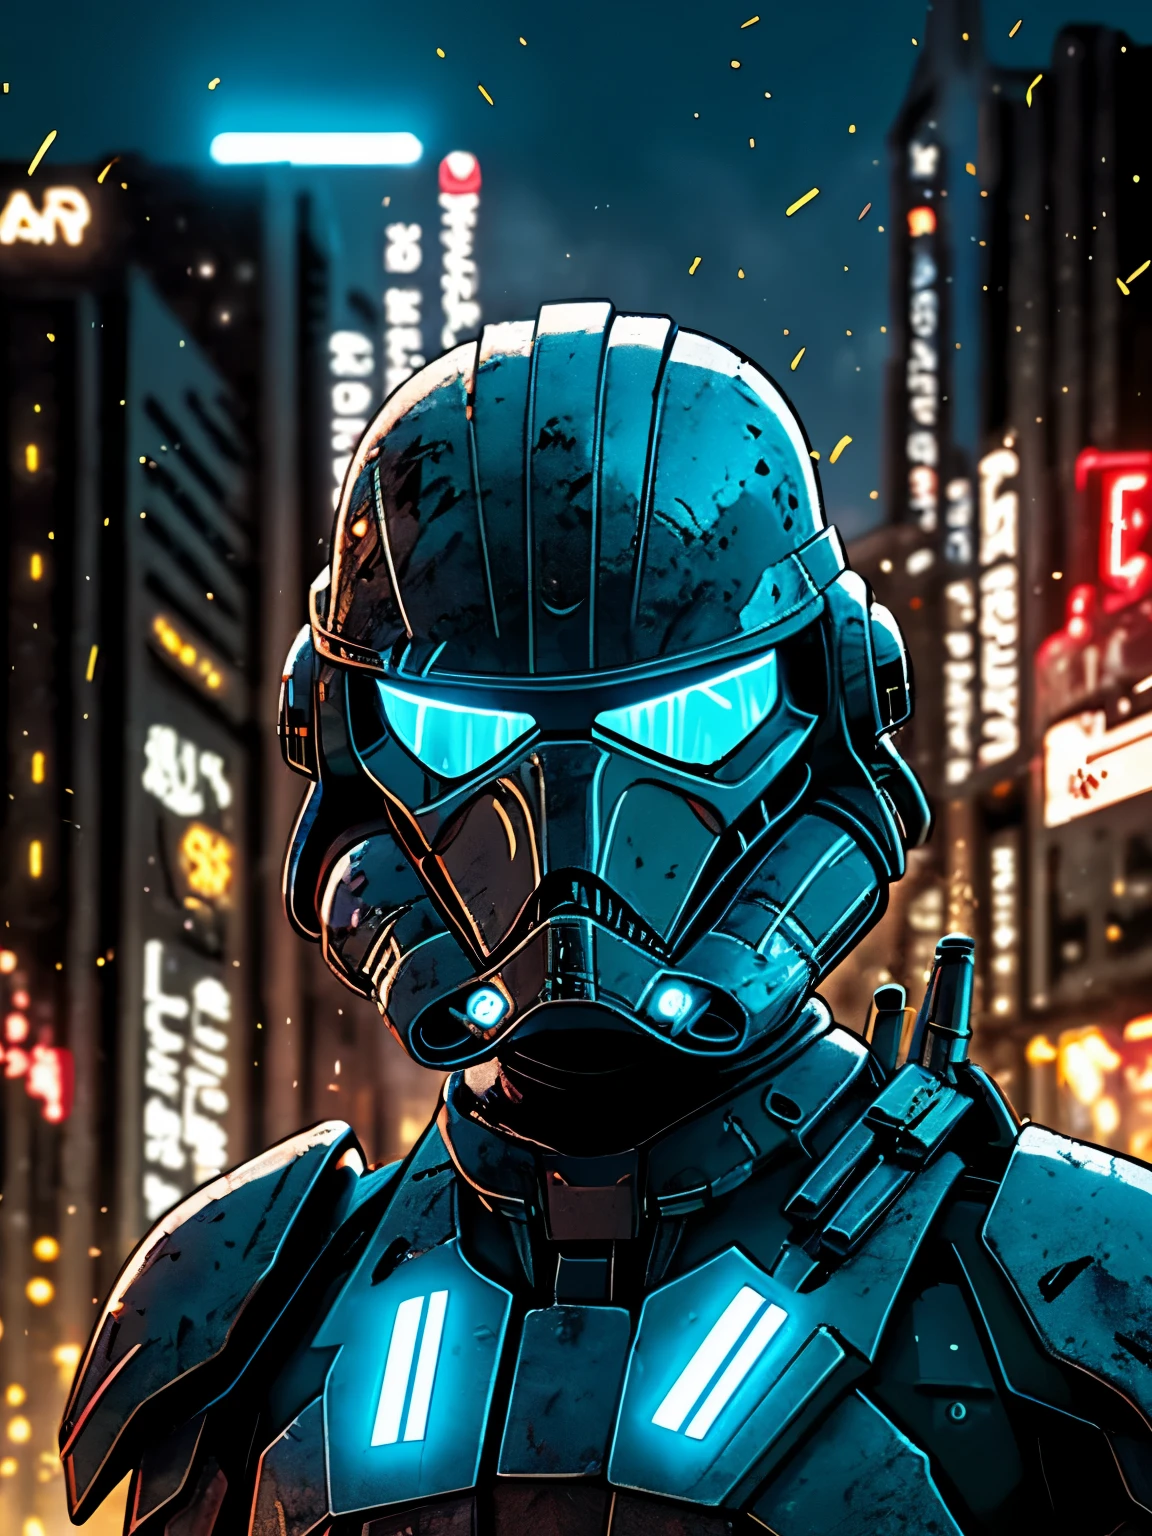 sombrío retrato de Zombie Stormtrooper de Star Wars, extremadamente detallado, paisaje urbano futurista, Noche, luces de neón brillantes, fumar, chispas, virutas de metal, escombros voladores, efectos de energía azul, luz volumétrica